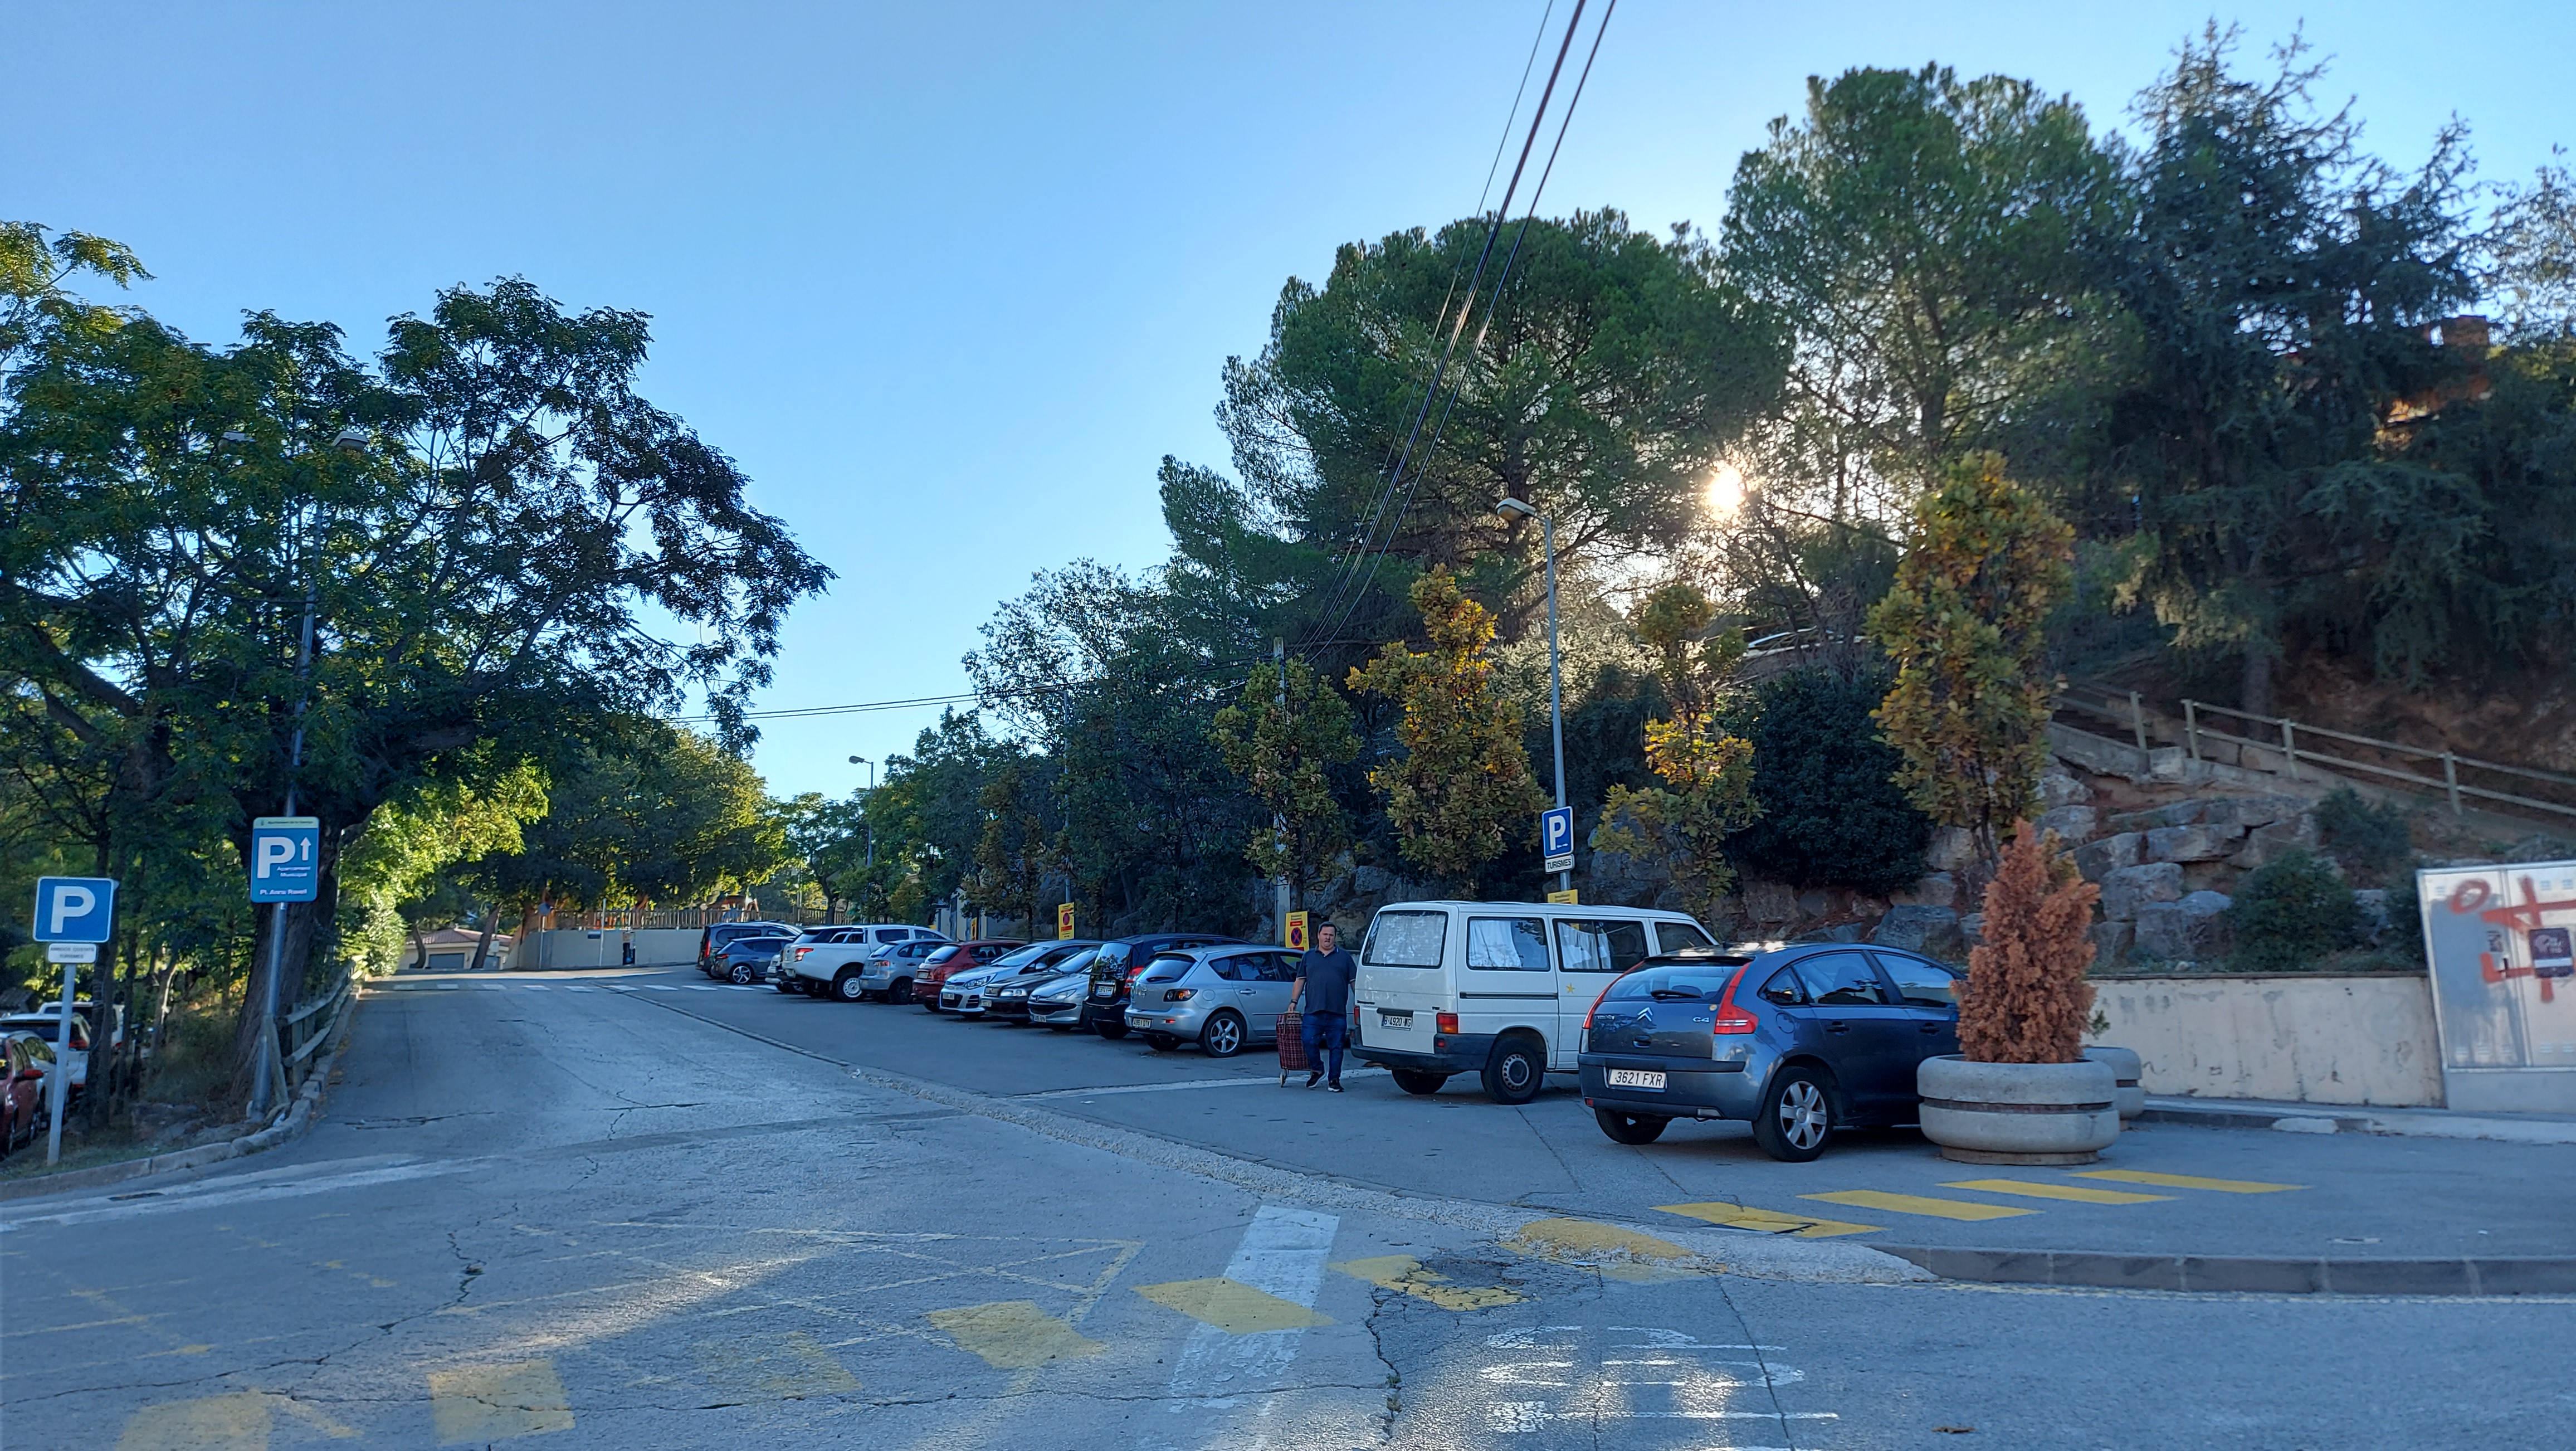 Afectació als aparcaments de l'avinguda Pau Casals